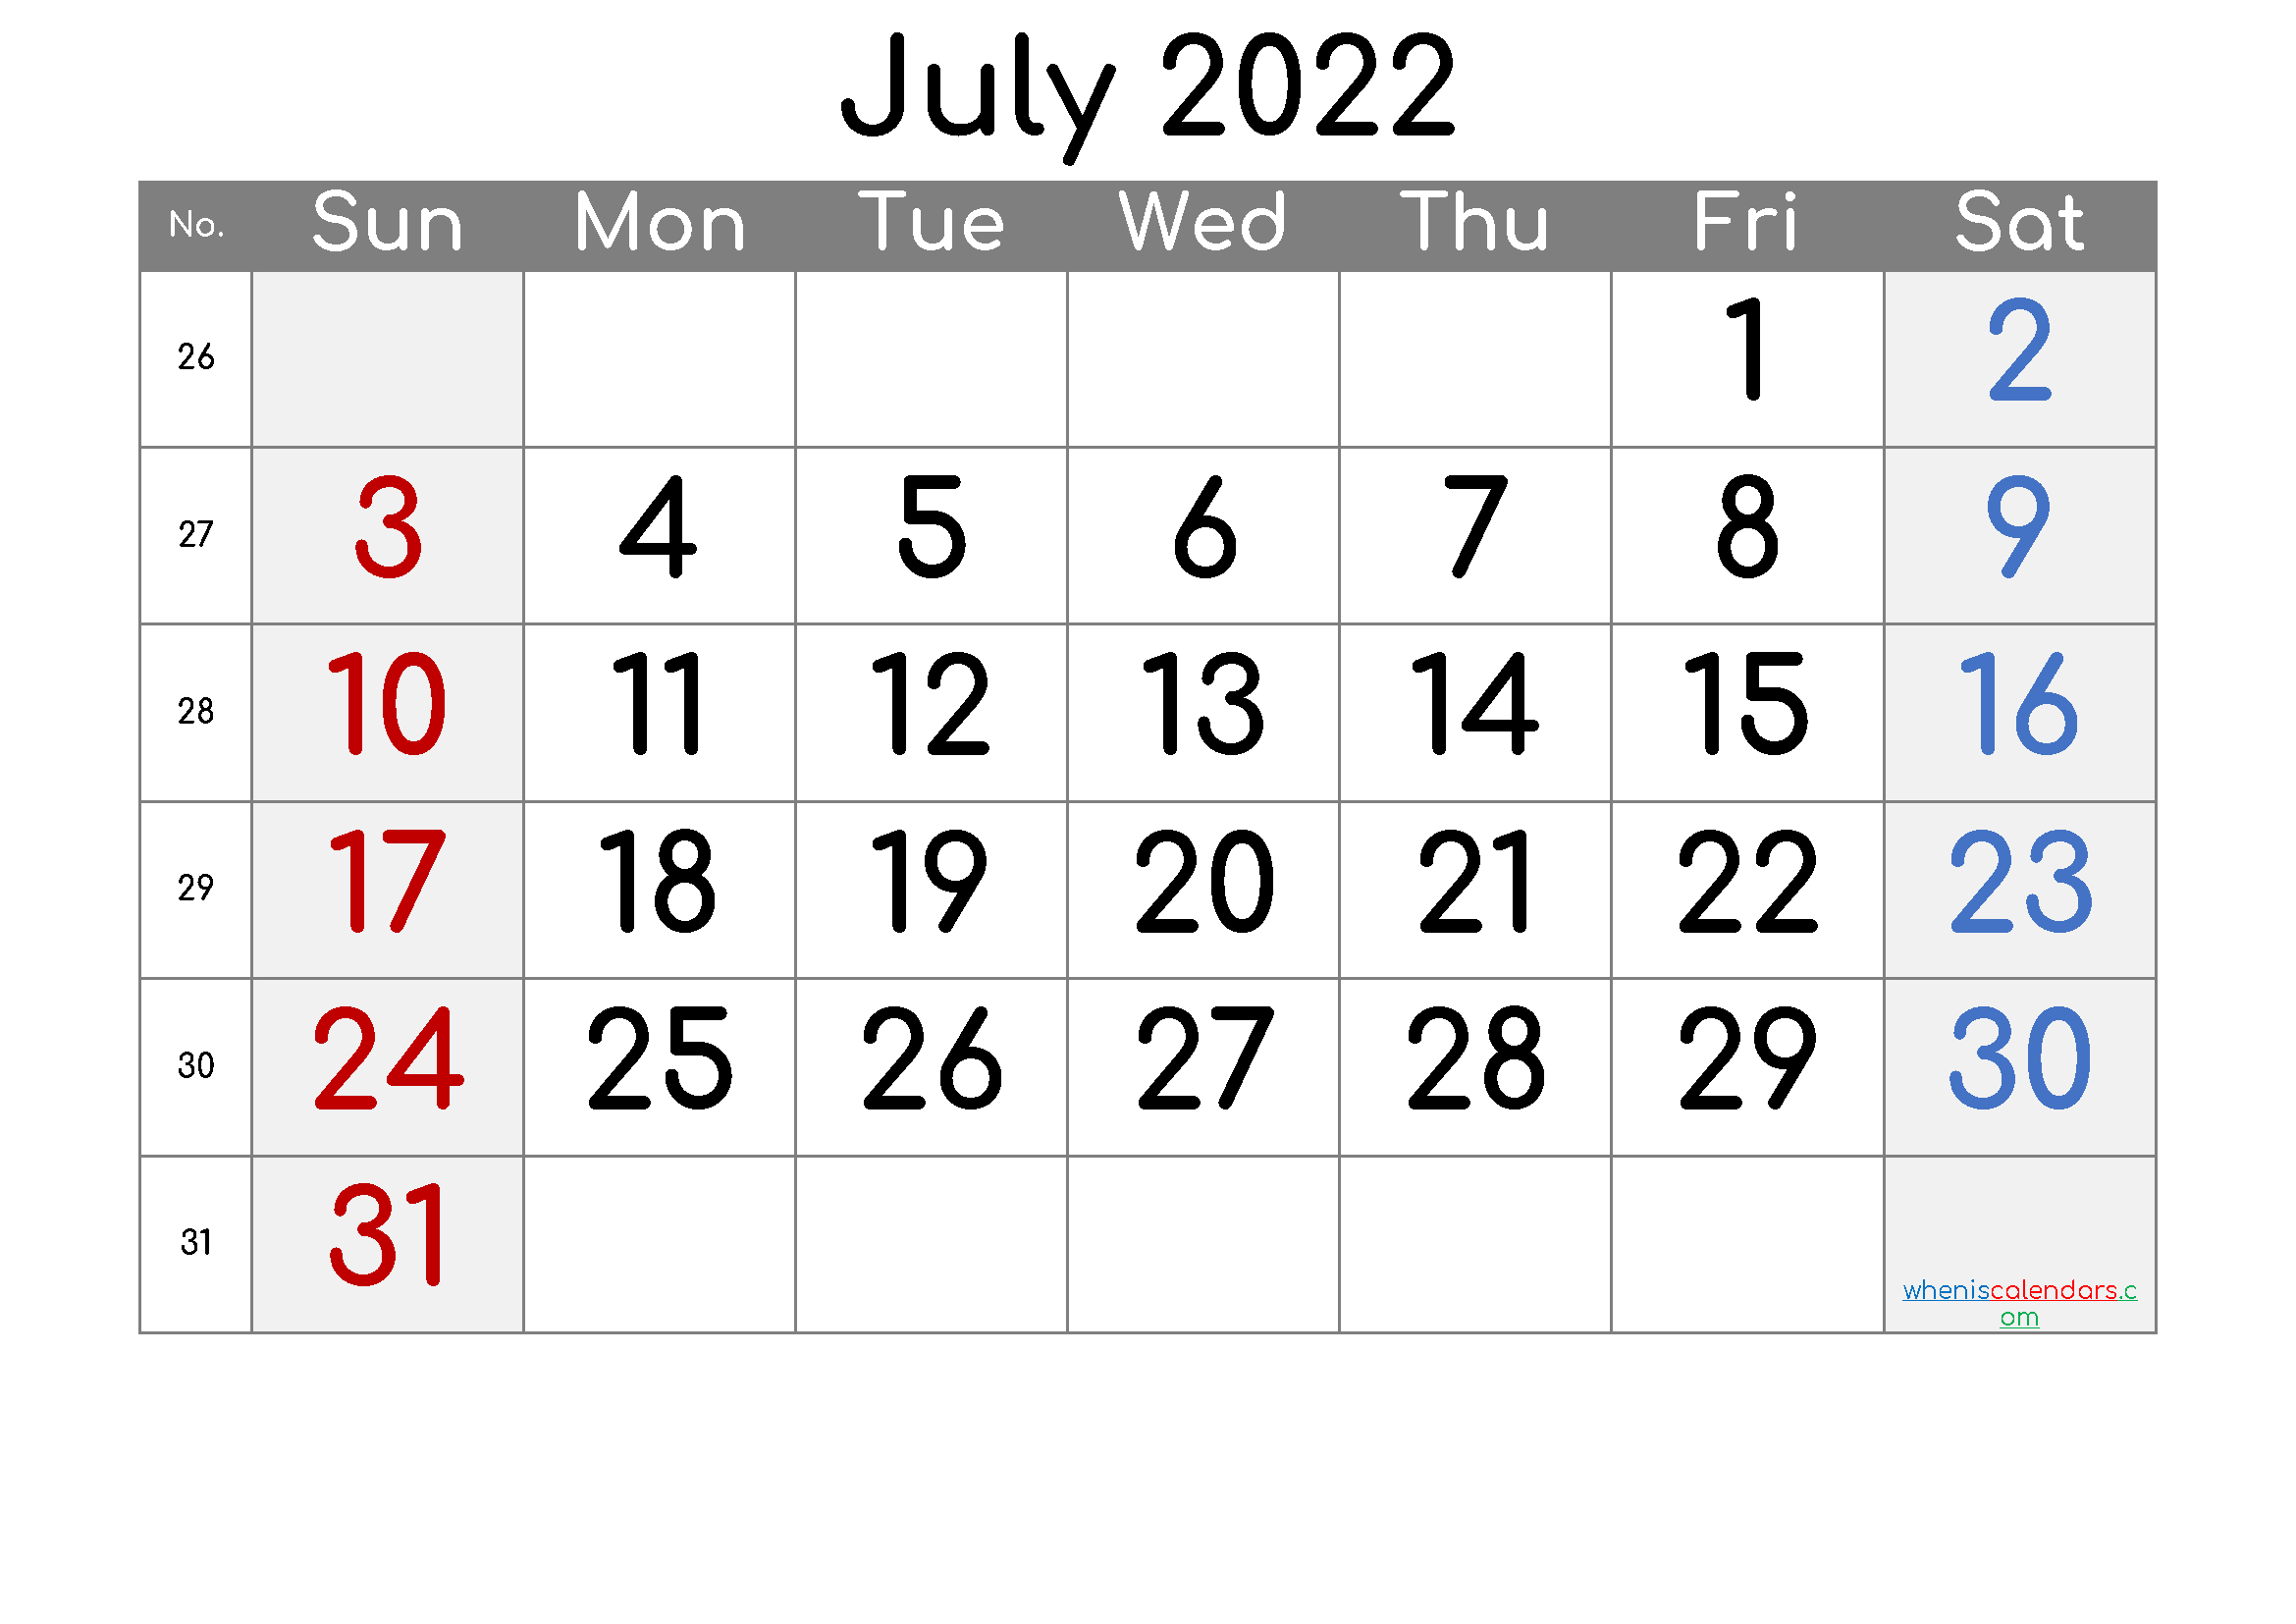 Get Lunar Calendar July 2022